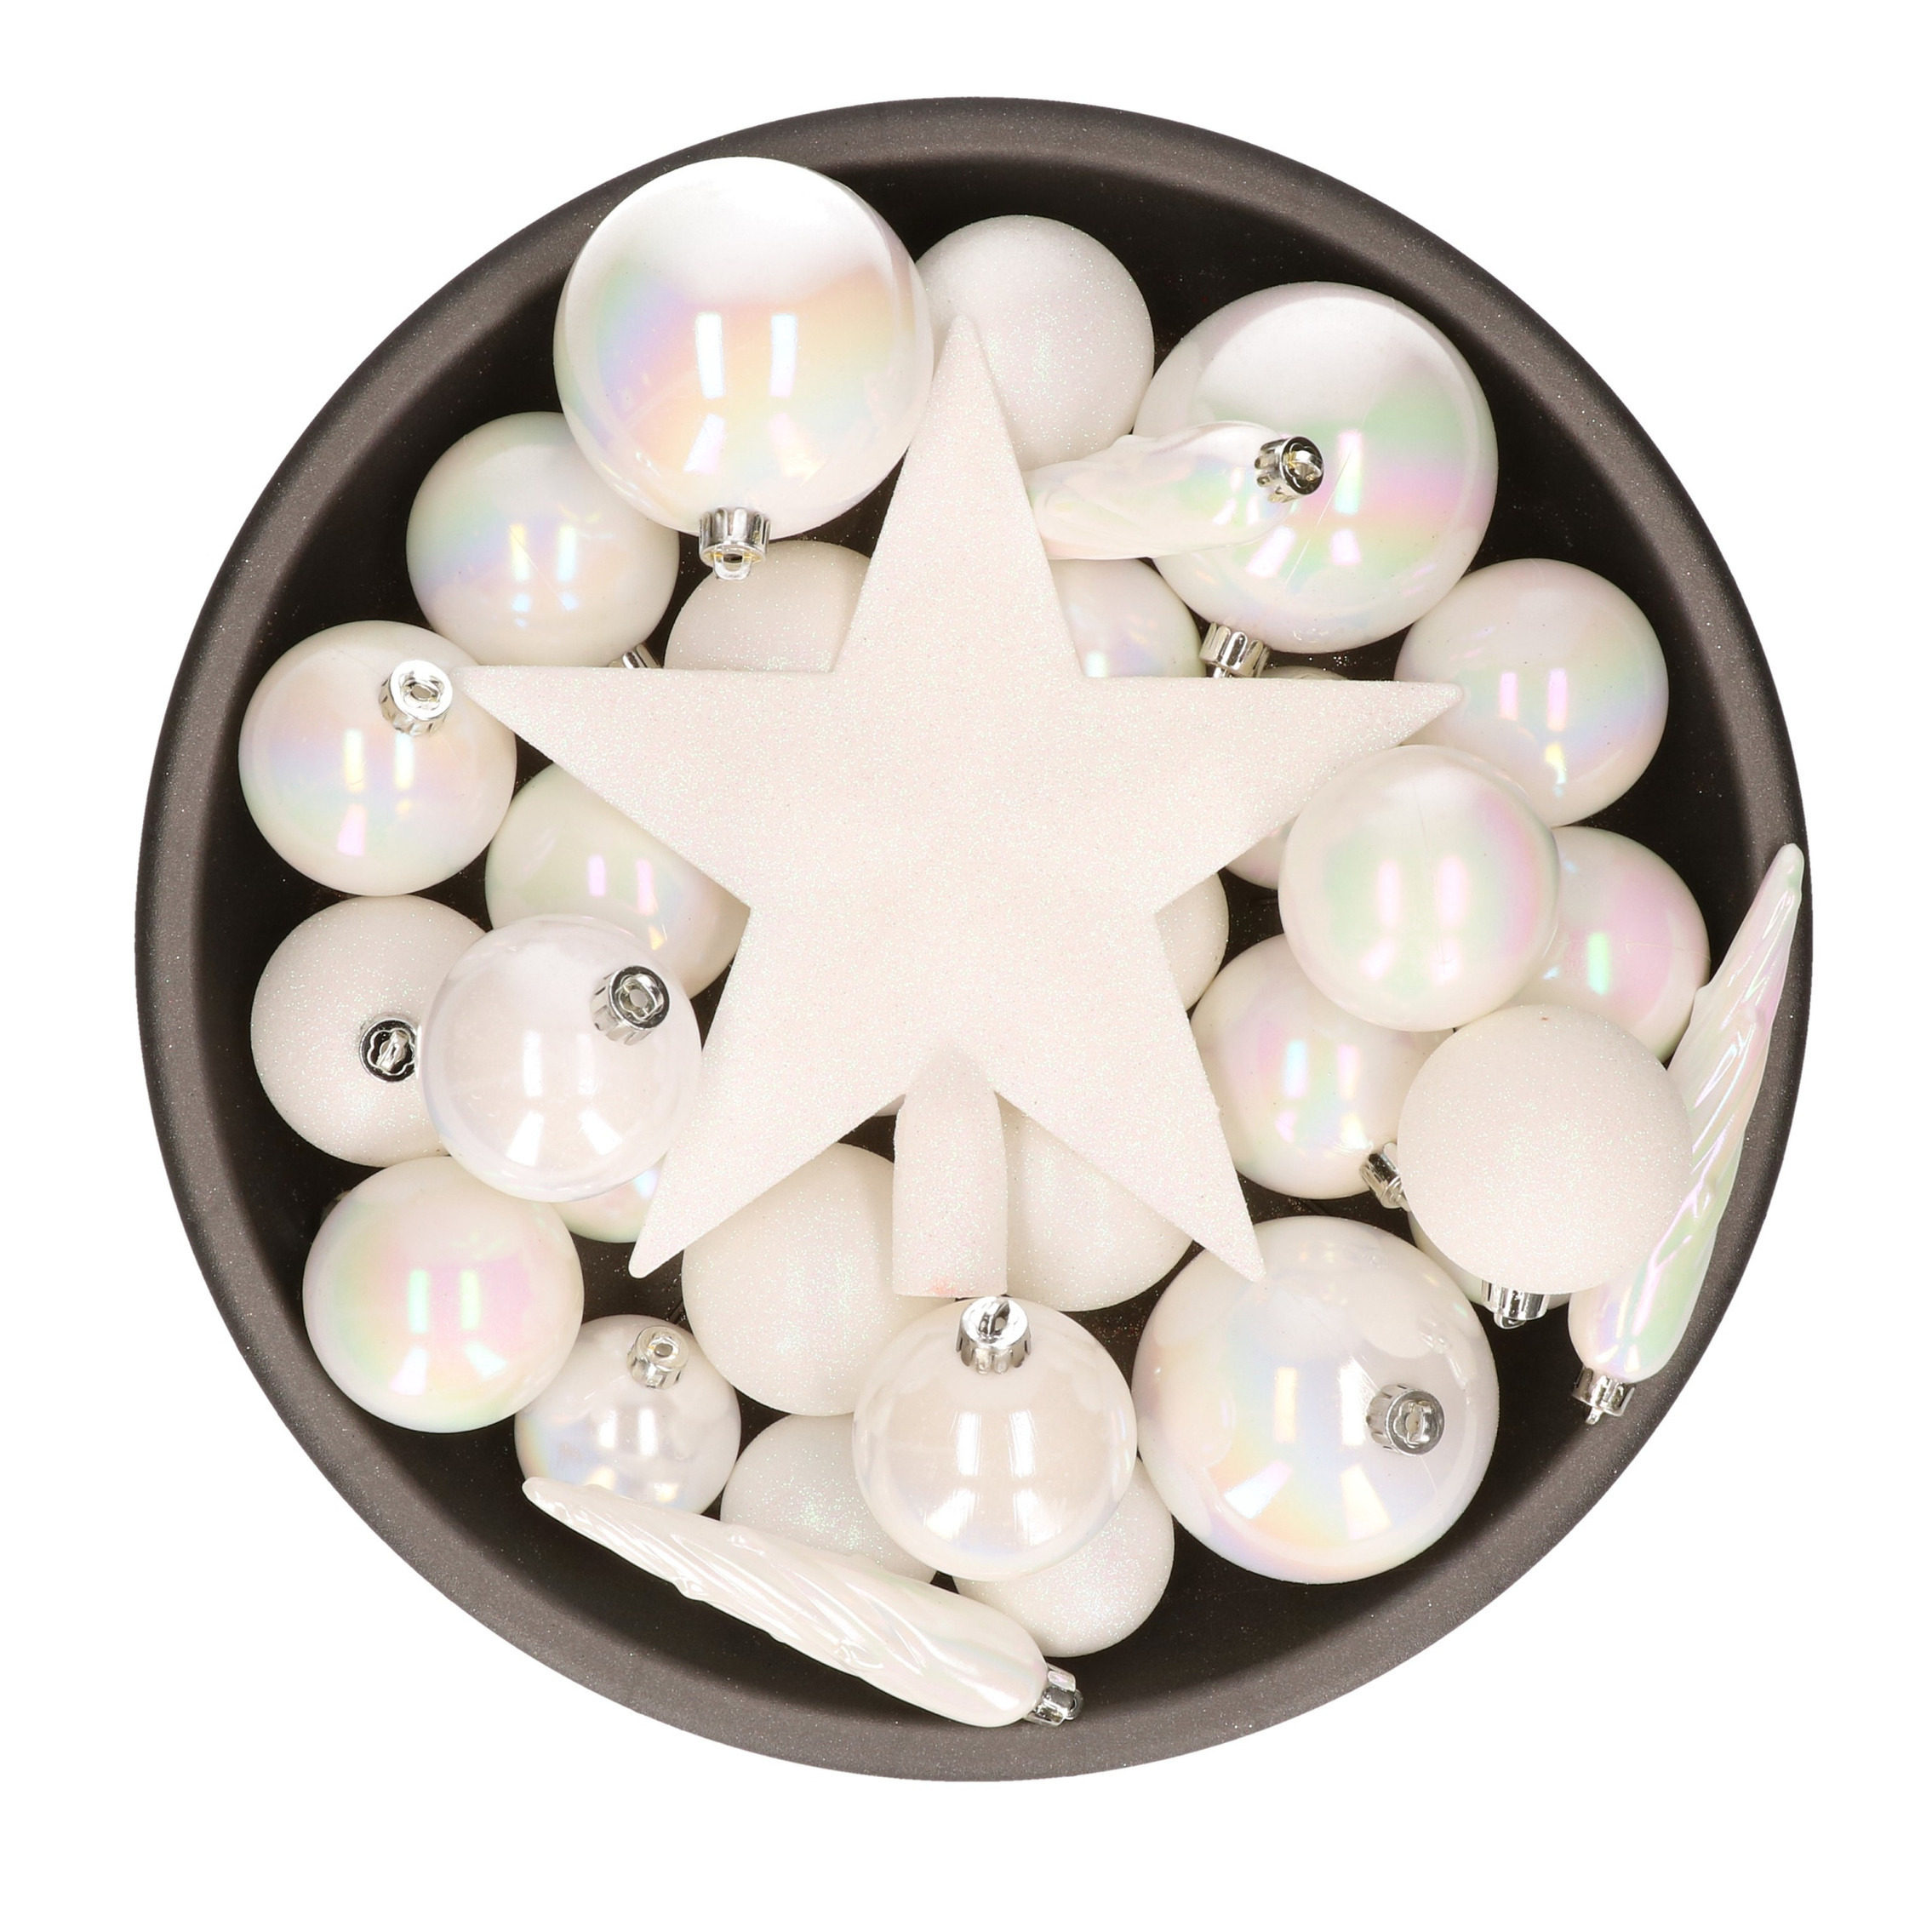 55x stuks kunststof kerstballen met ster piek parelmoer wit mix